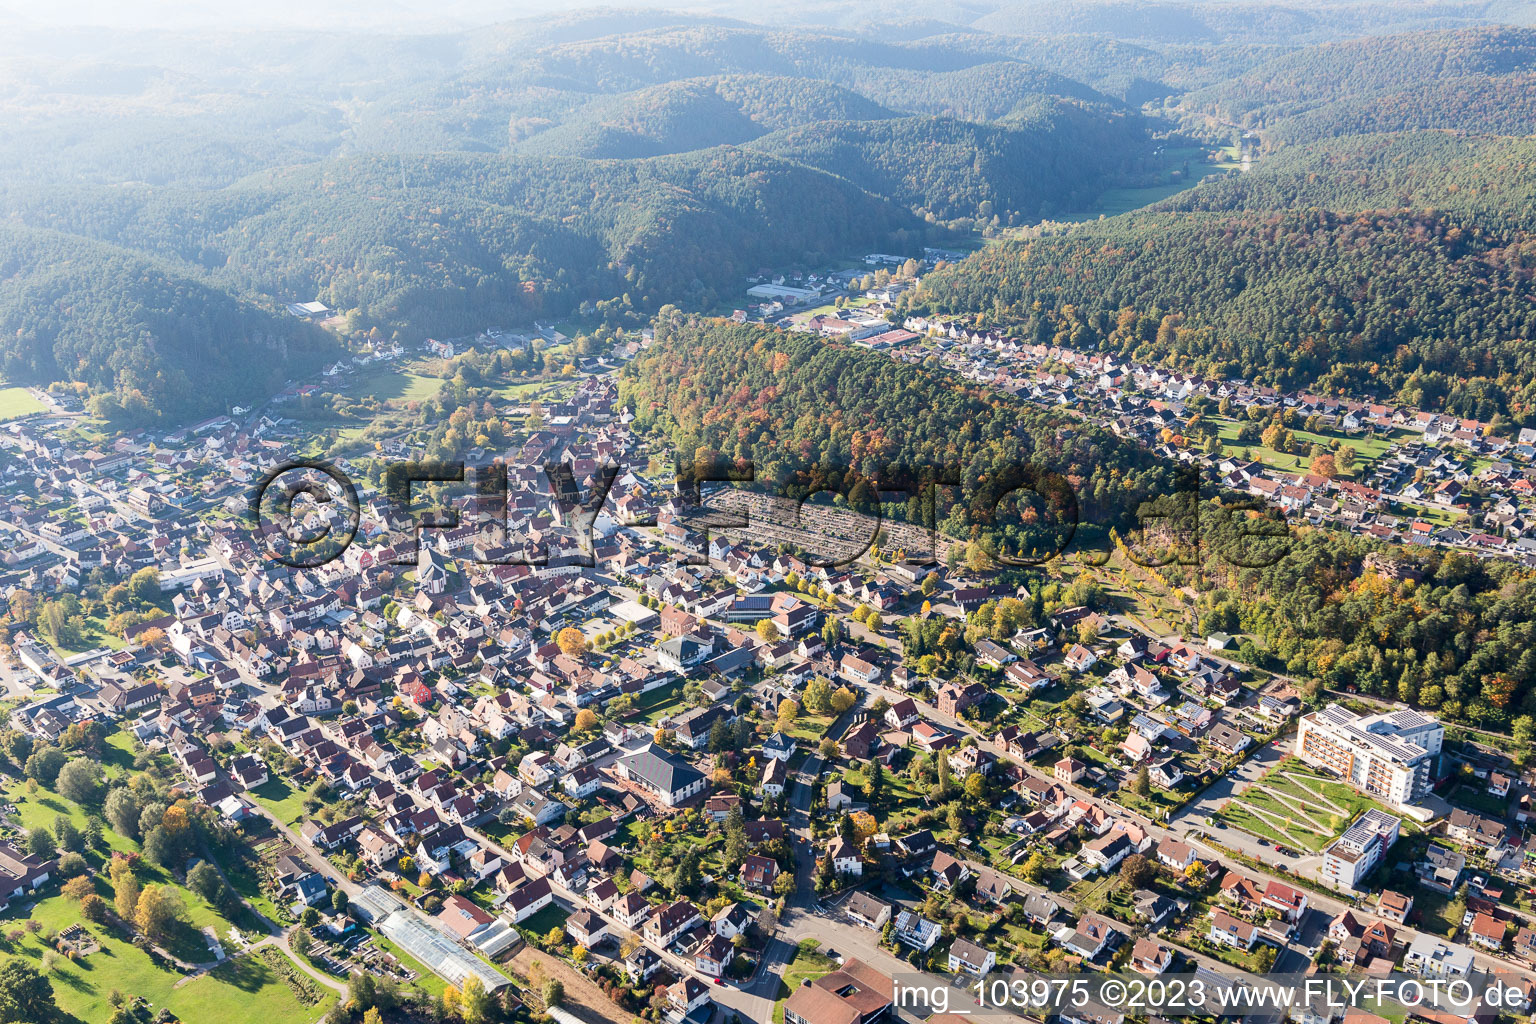 Dahn im Bundesland Rheinland-Pfalz, Deutschland aus der Luft betrachtet